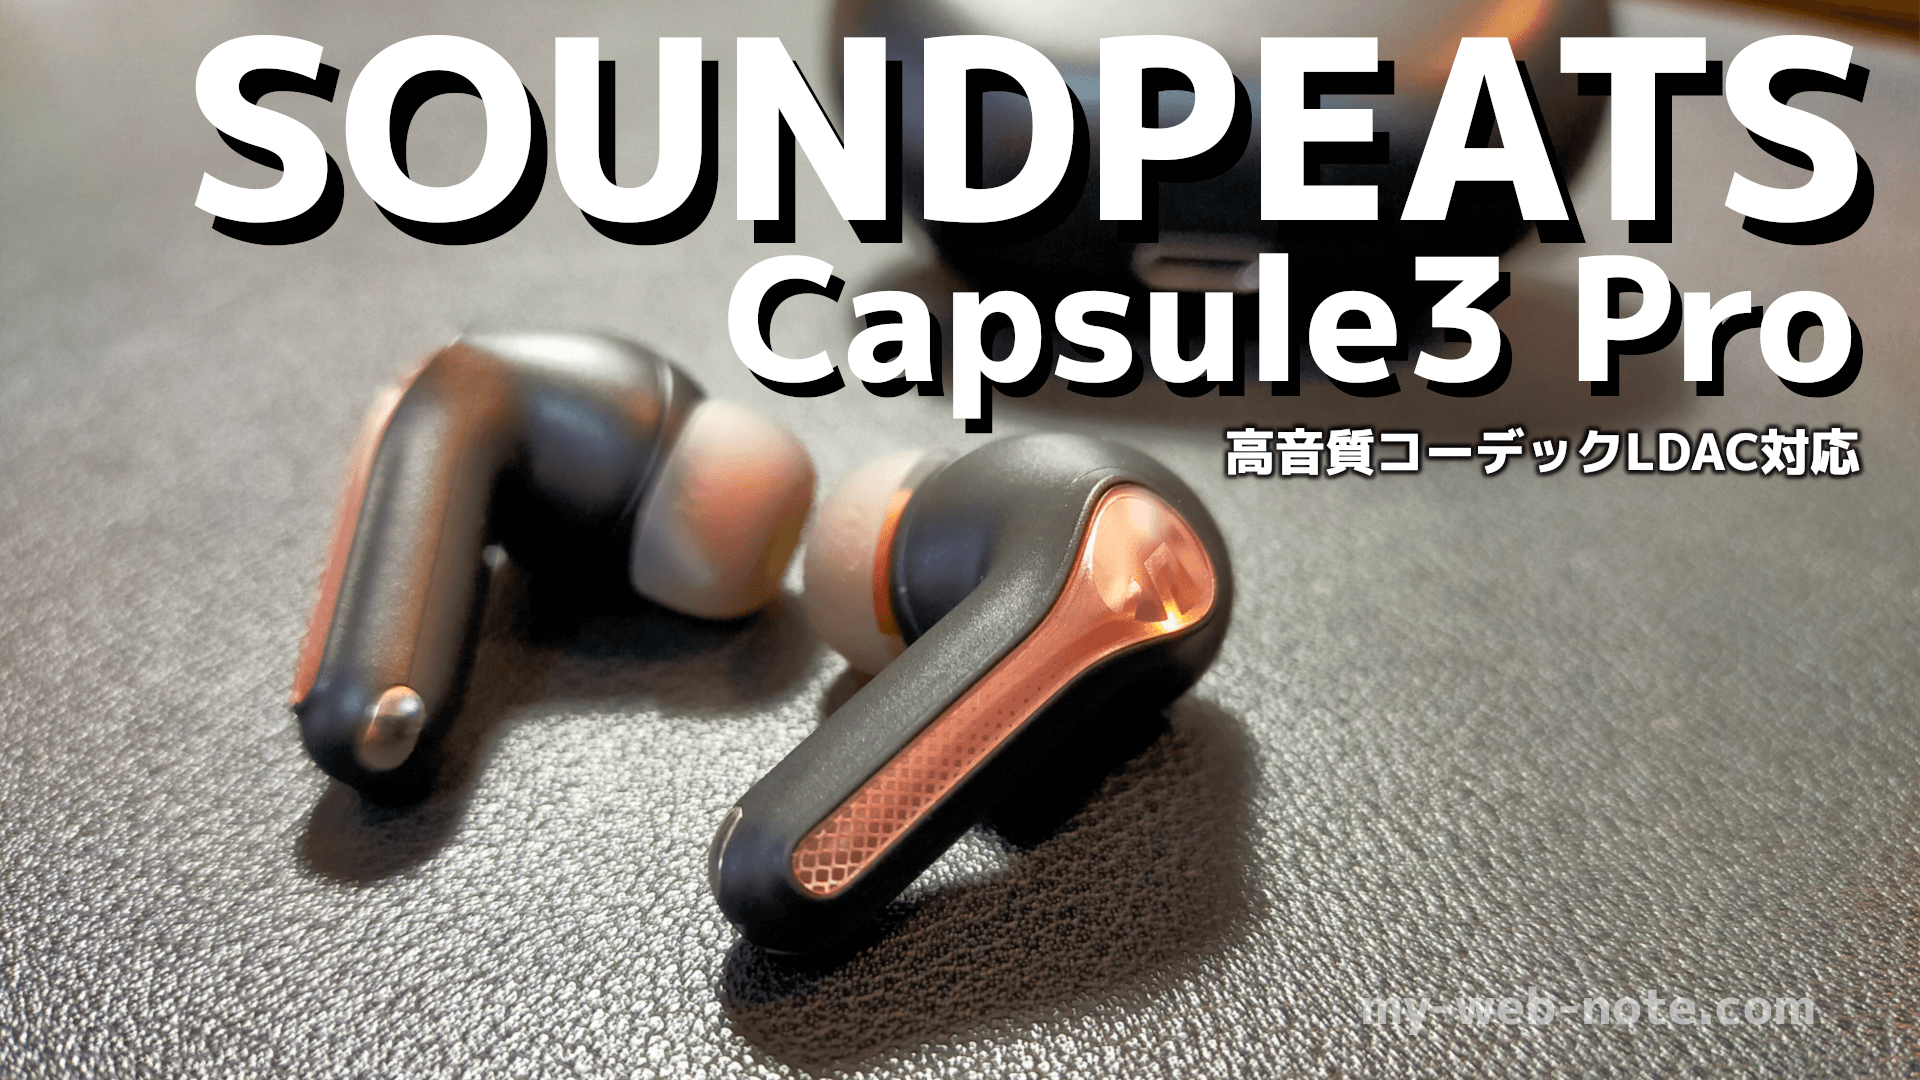 【ハイレゾ対応】完全ワイヤレスイヤホン『SOUNDPEATS Capsule3 Pro』レビュー